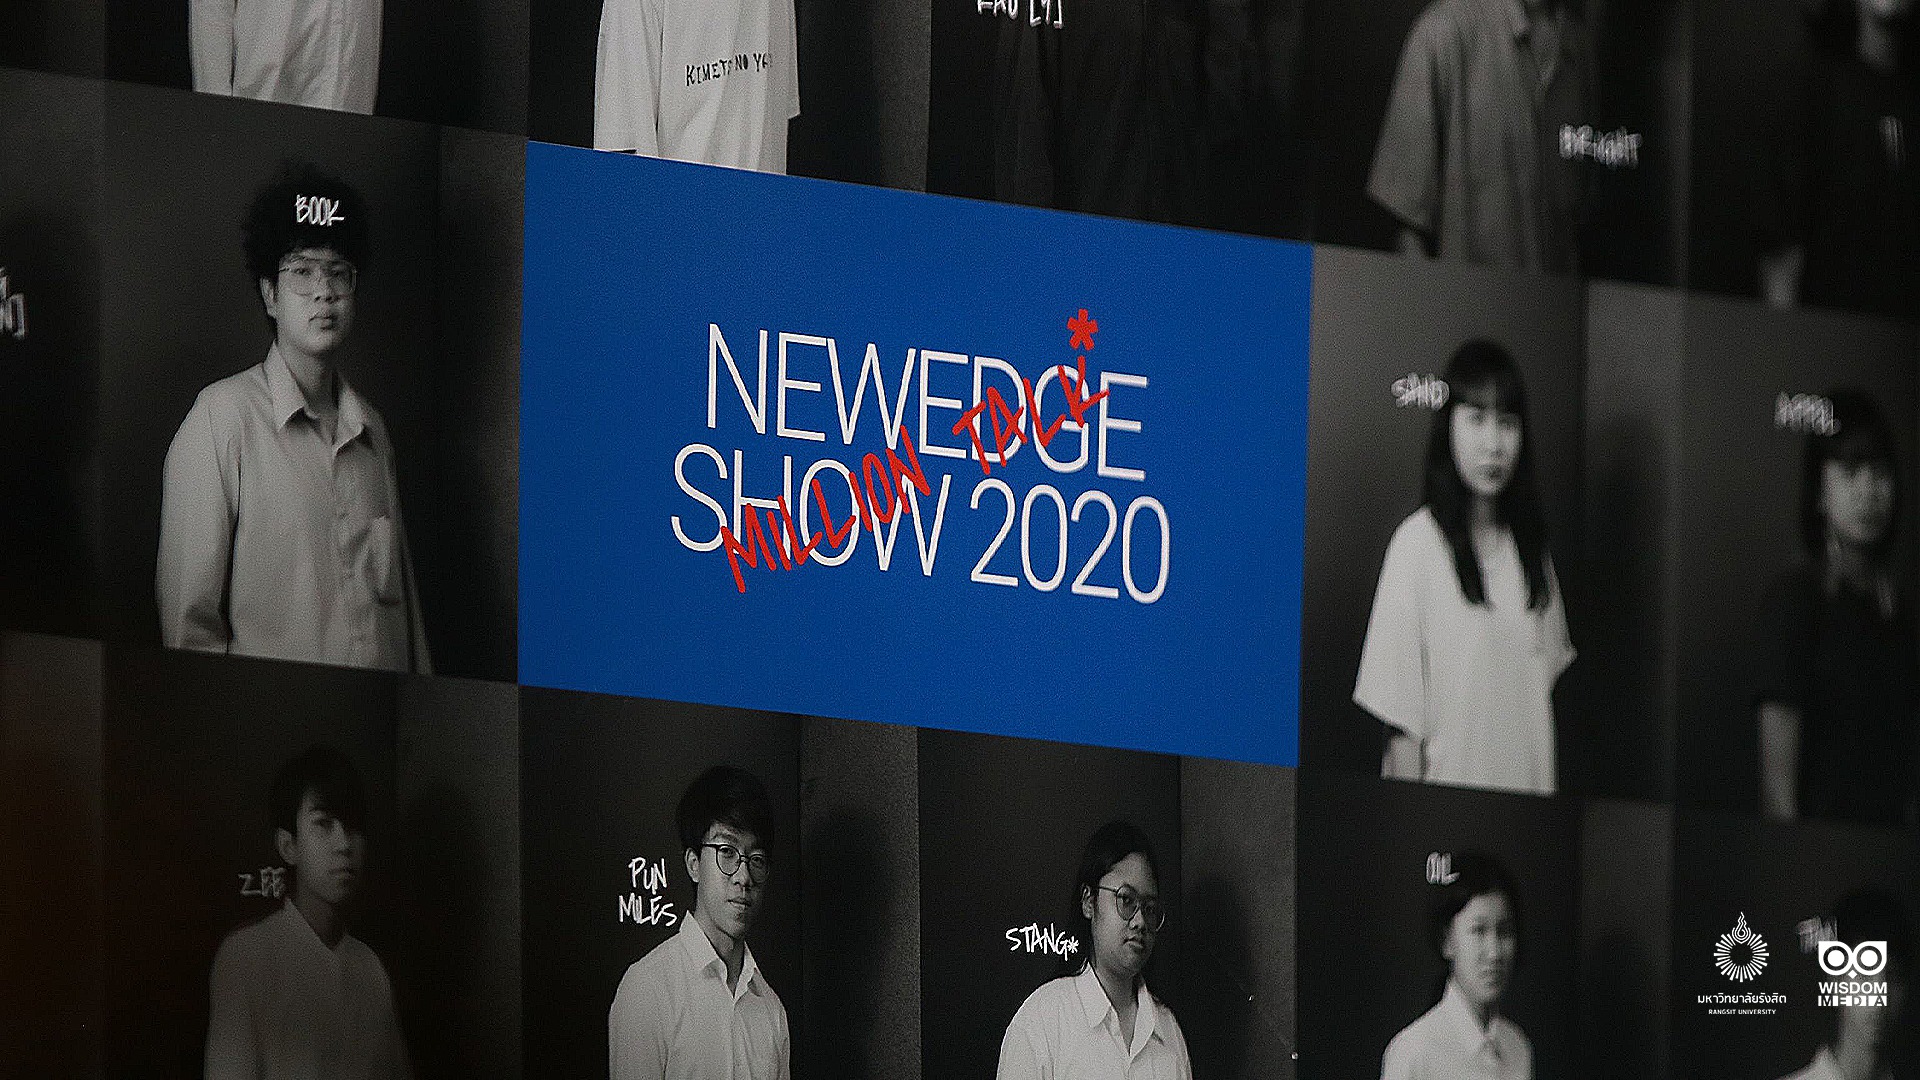 Art Design : NewEdge studio นิทรรศการ แสดงผลงานของนักศึกษาคณะสถาปัตยกรรมศาสตร์ ม.รังสิต